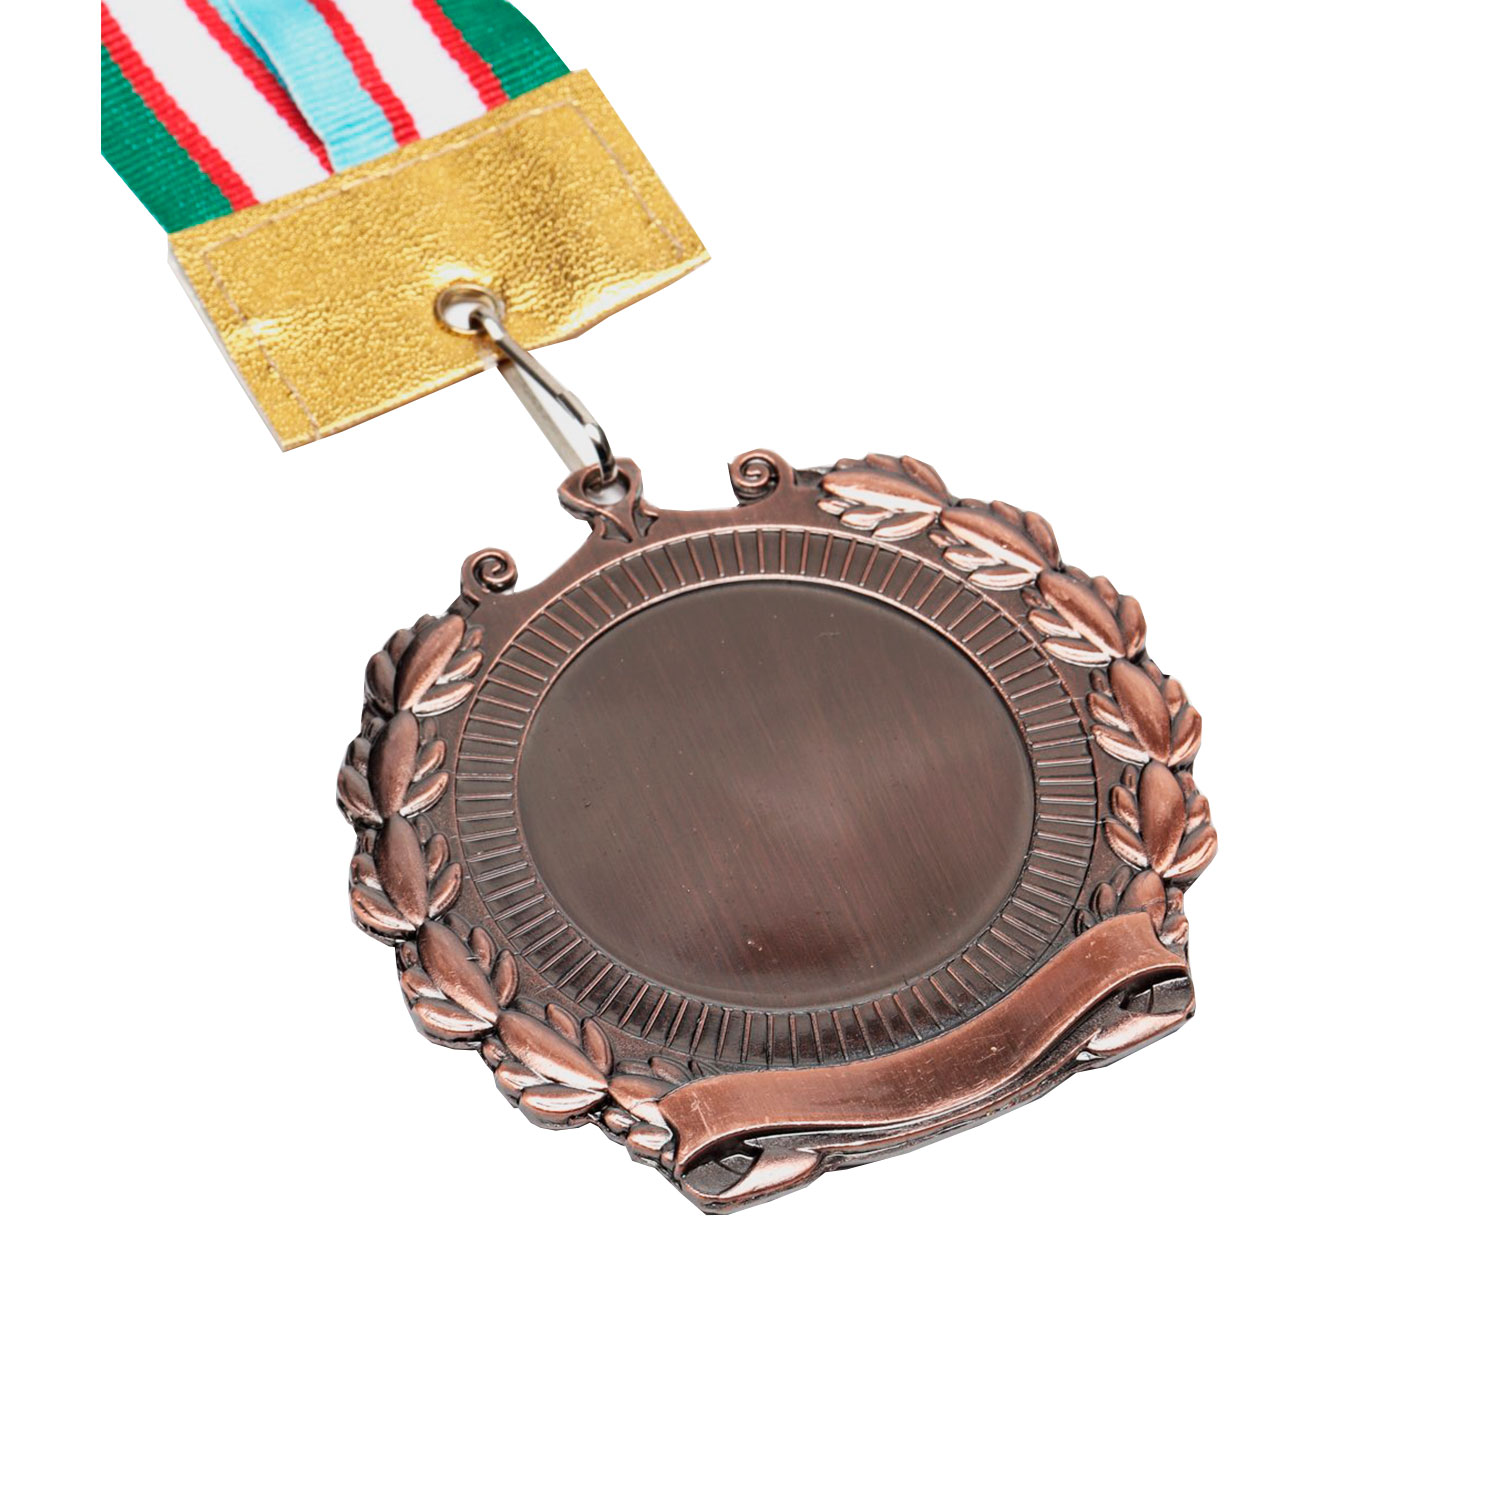 Медаль 3 место